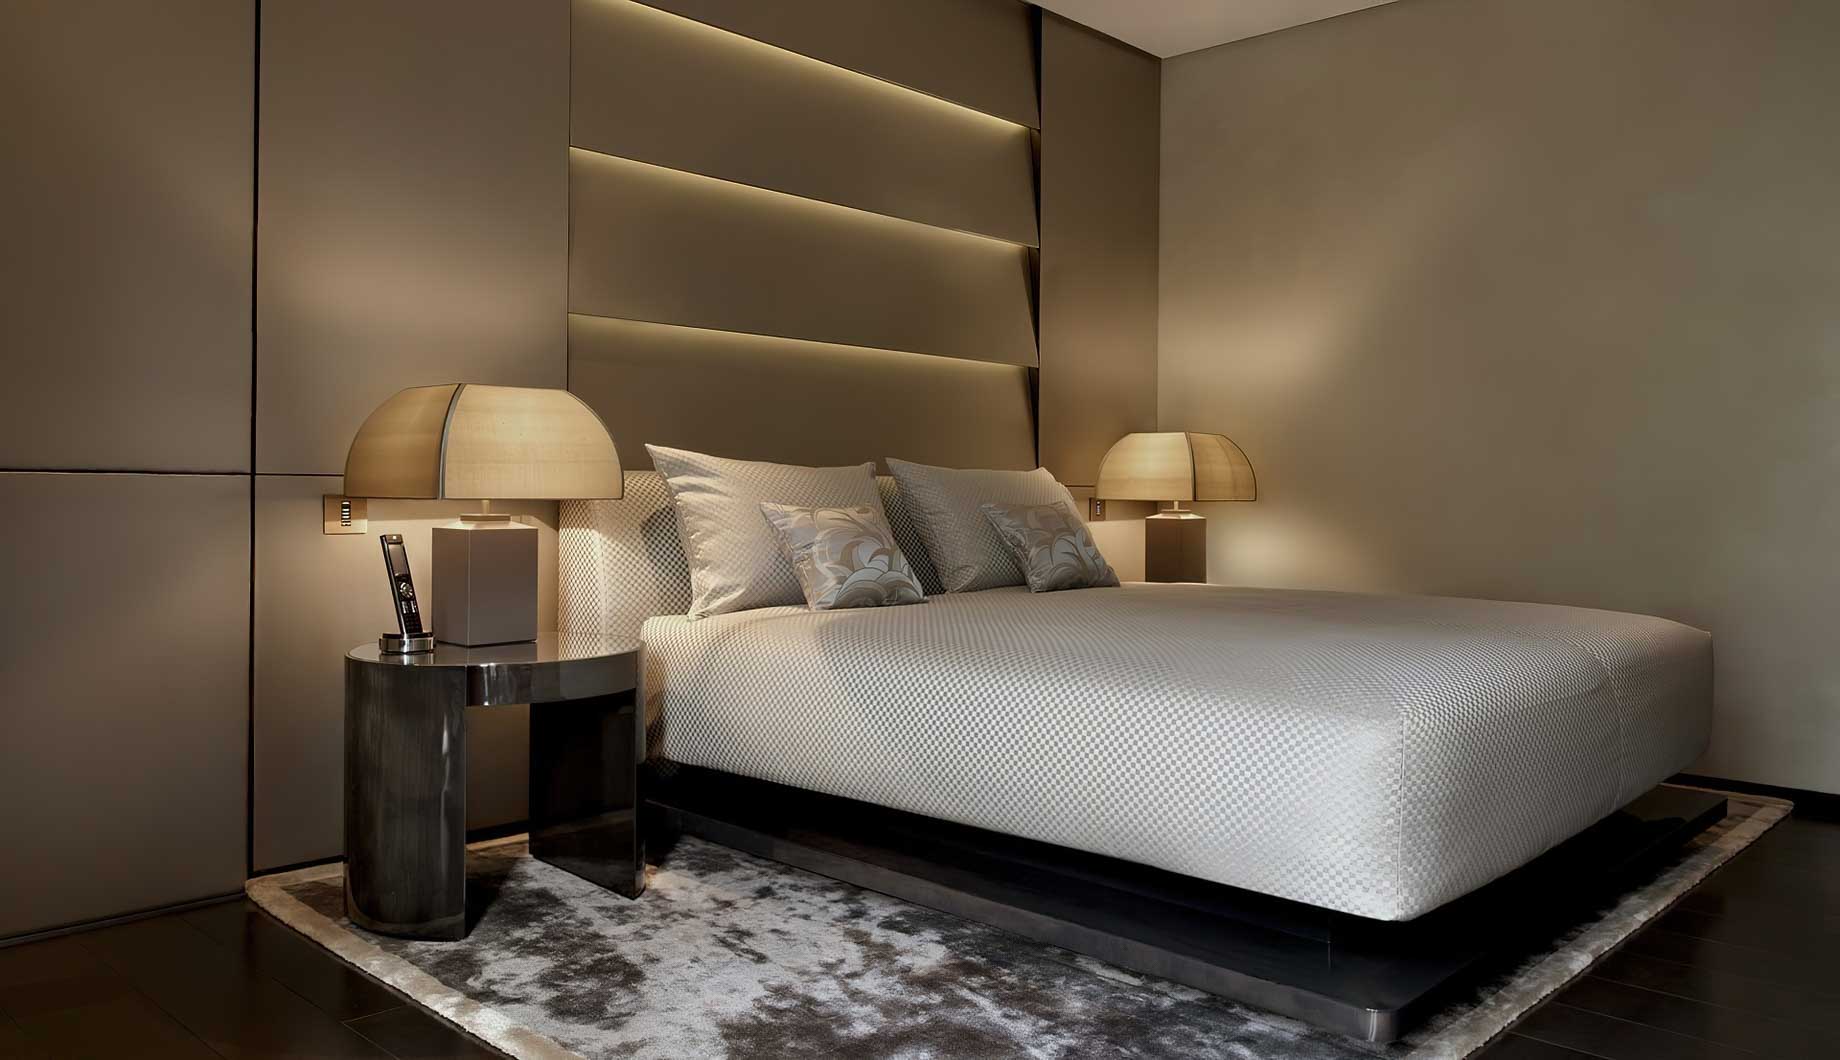 040 – Armani Hotel Milano – Milan, Italy – Armani Suite Bedroom